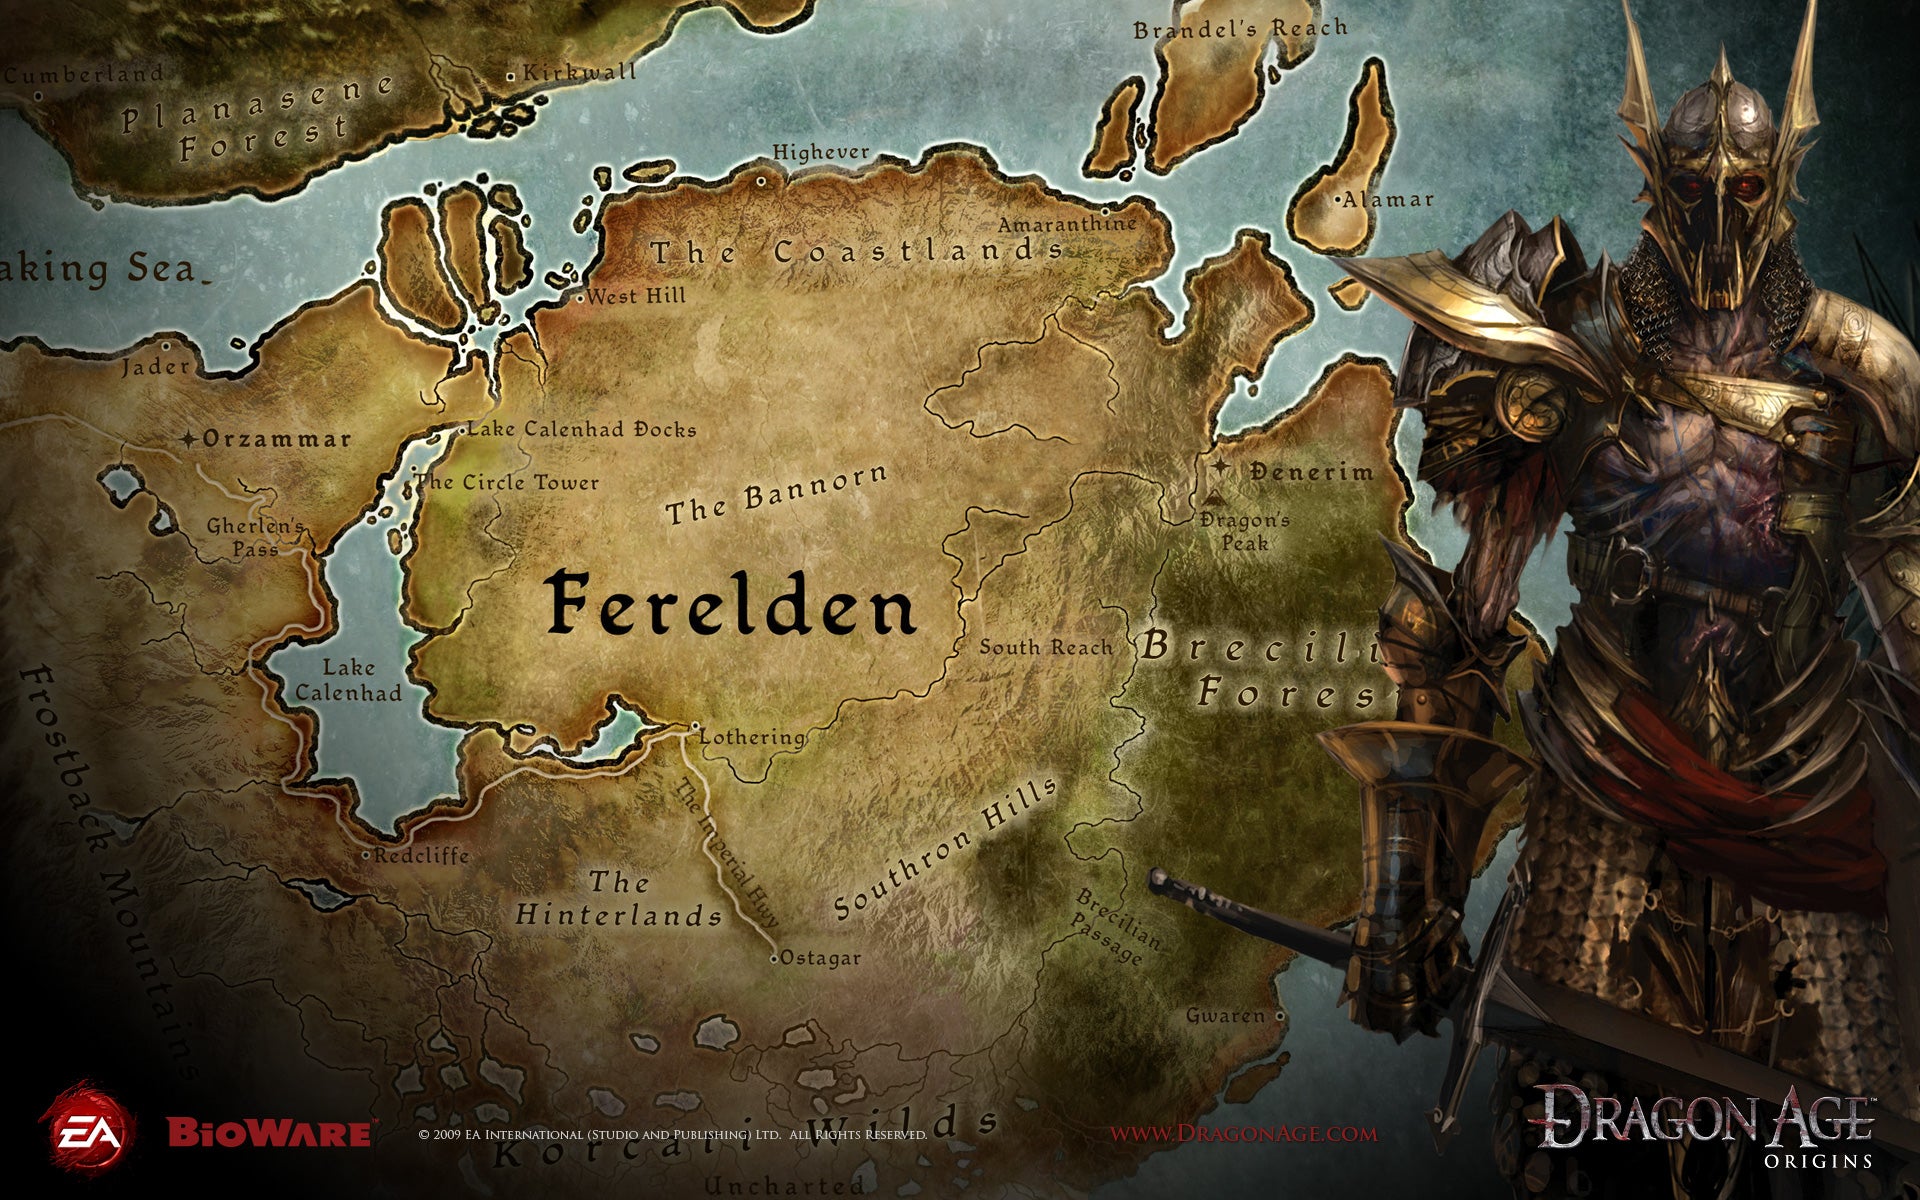 La mappa del mondo di Dragon Age: Origins, mostrando la regione di Ferelden in cui avventurarsi.